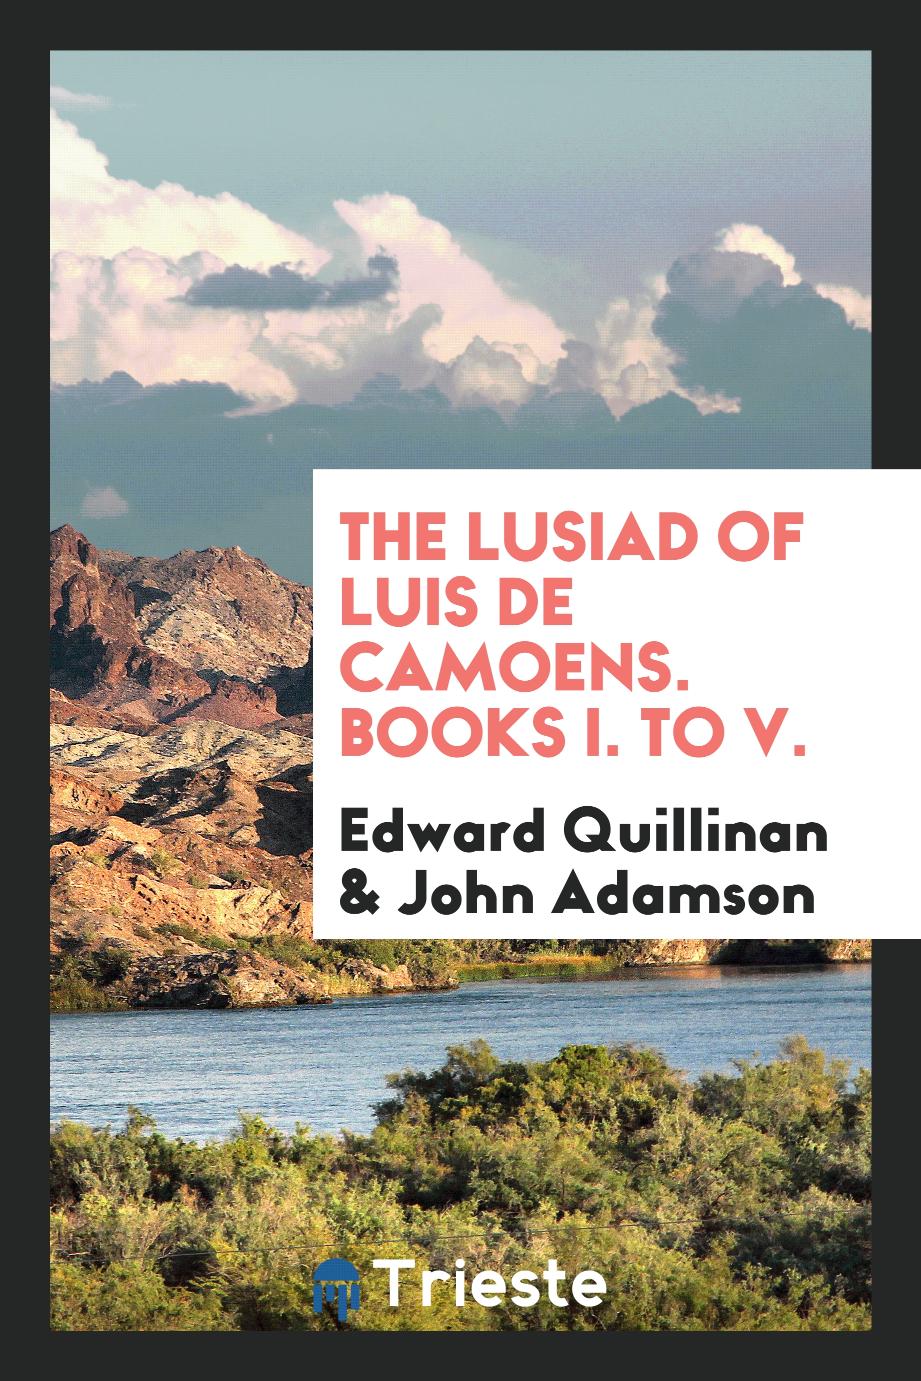 The Lusiad of Luis de Camoens. Books I. to V.